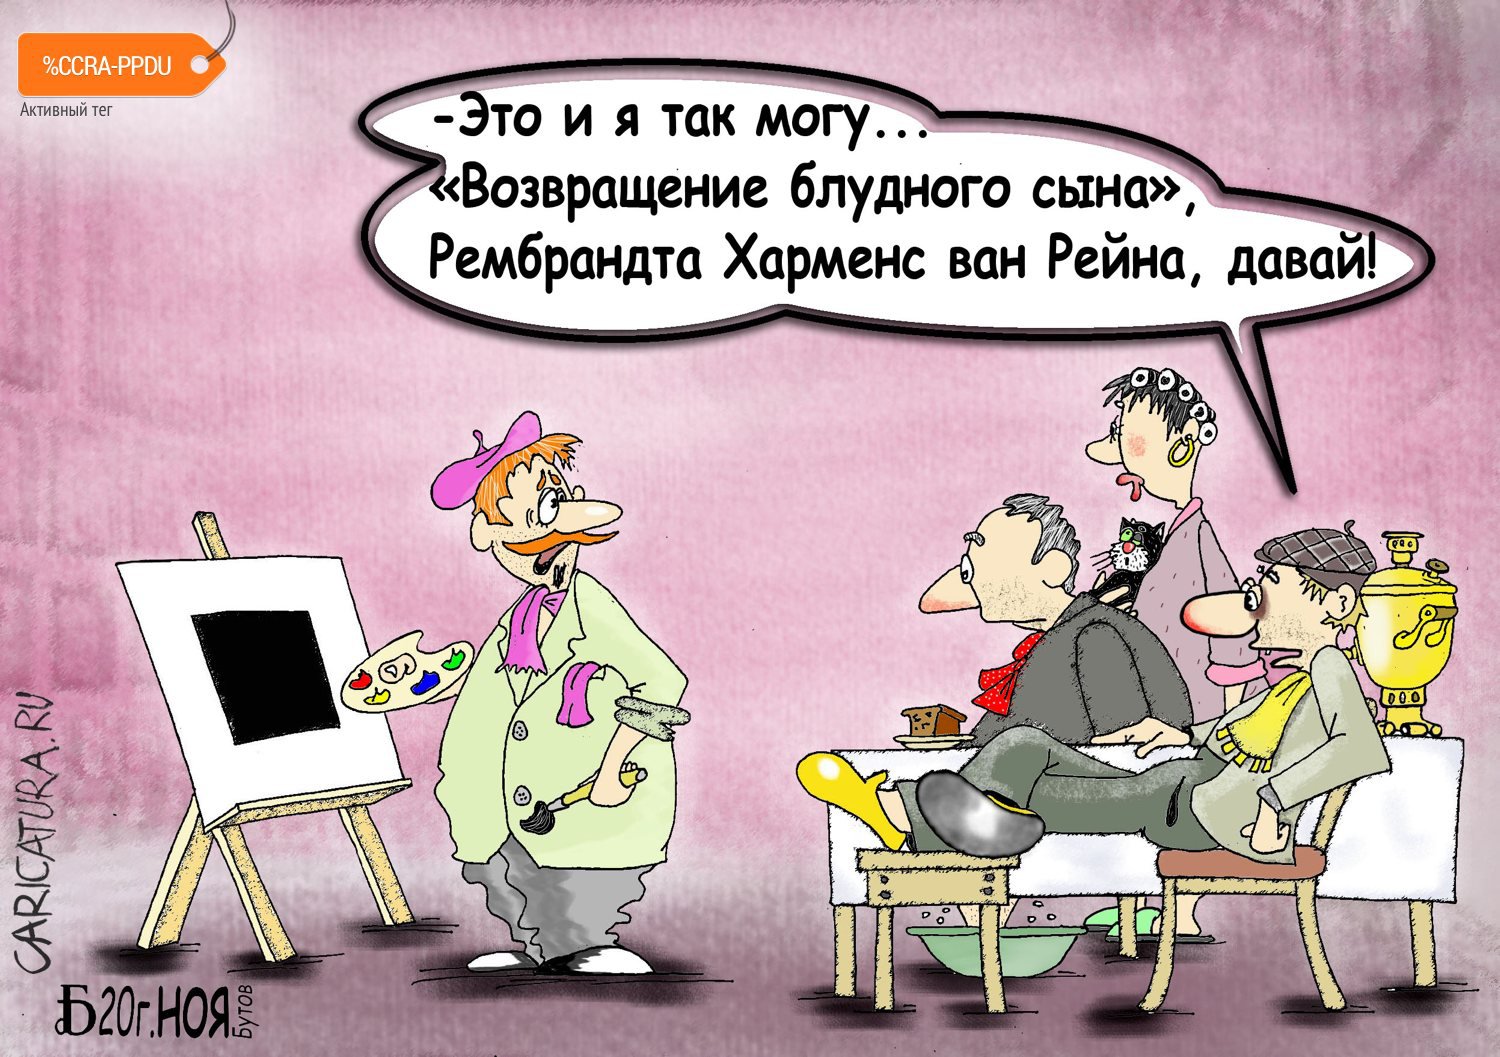 Карикатура "Про изменить нельзя", Борис Демин